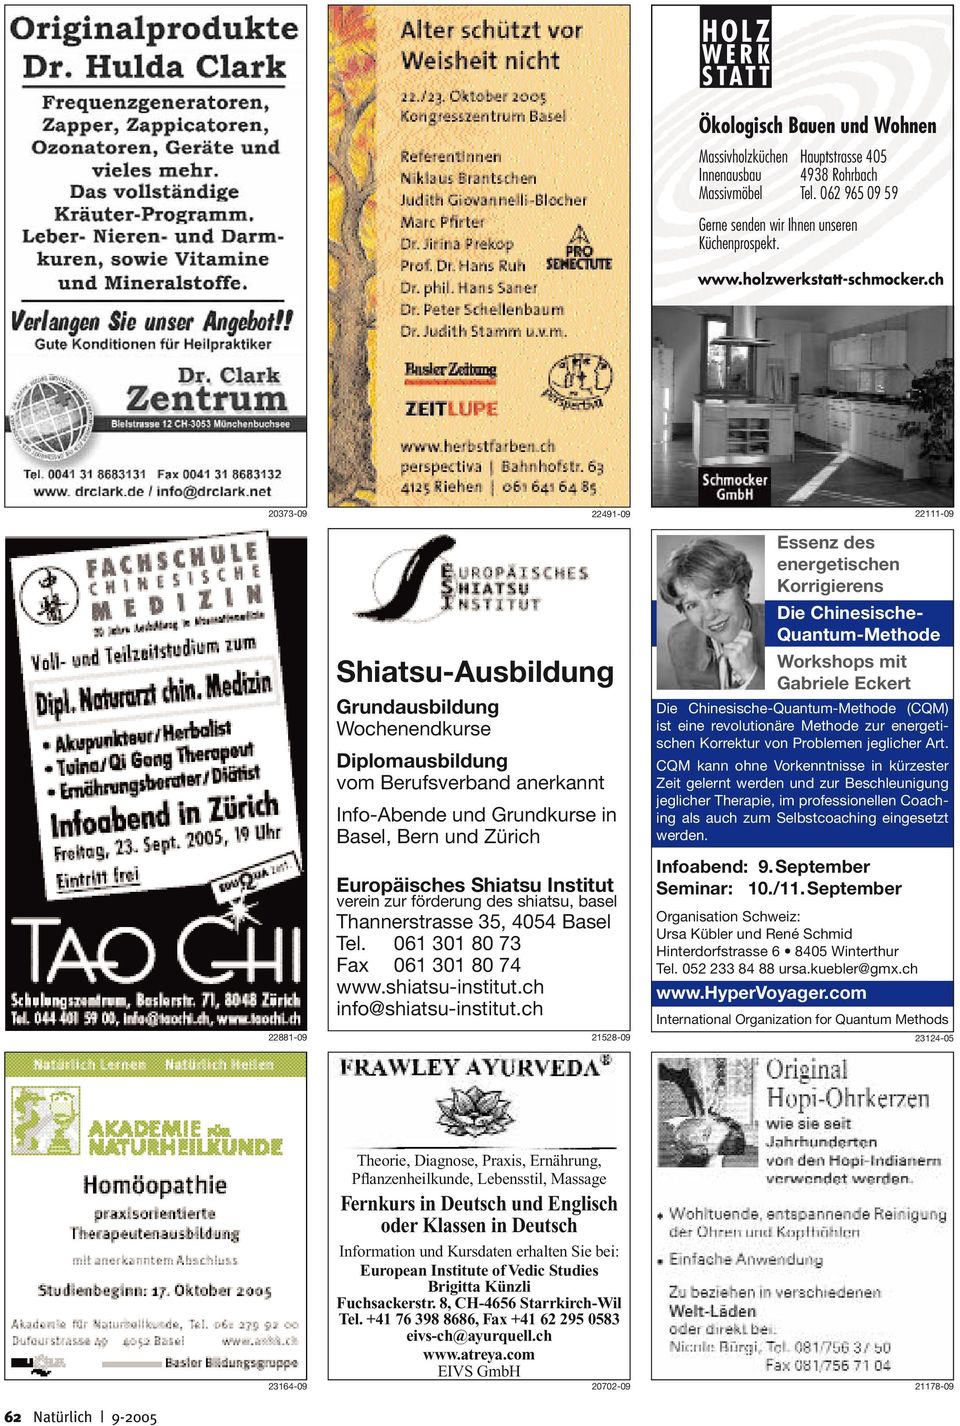 ch 20373-09 22491-09 22111-09 Shiatsu-Ausbildung Grundausbildung Wochenendkurse Diplomausbildung vom Berufsverband anerkannt Info-Abende und Grundkurse in Basel, Bern und Zürich Europäisches Shiatsu